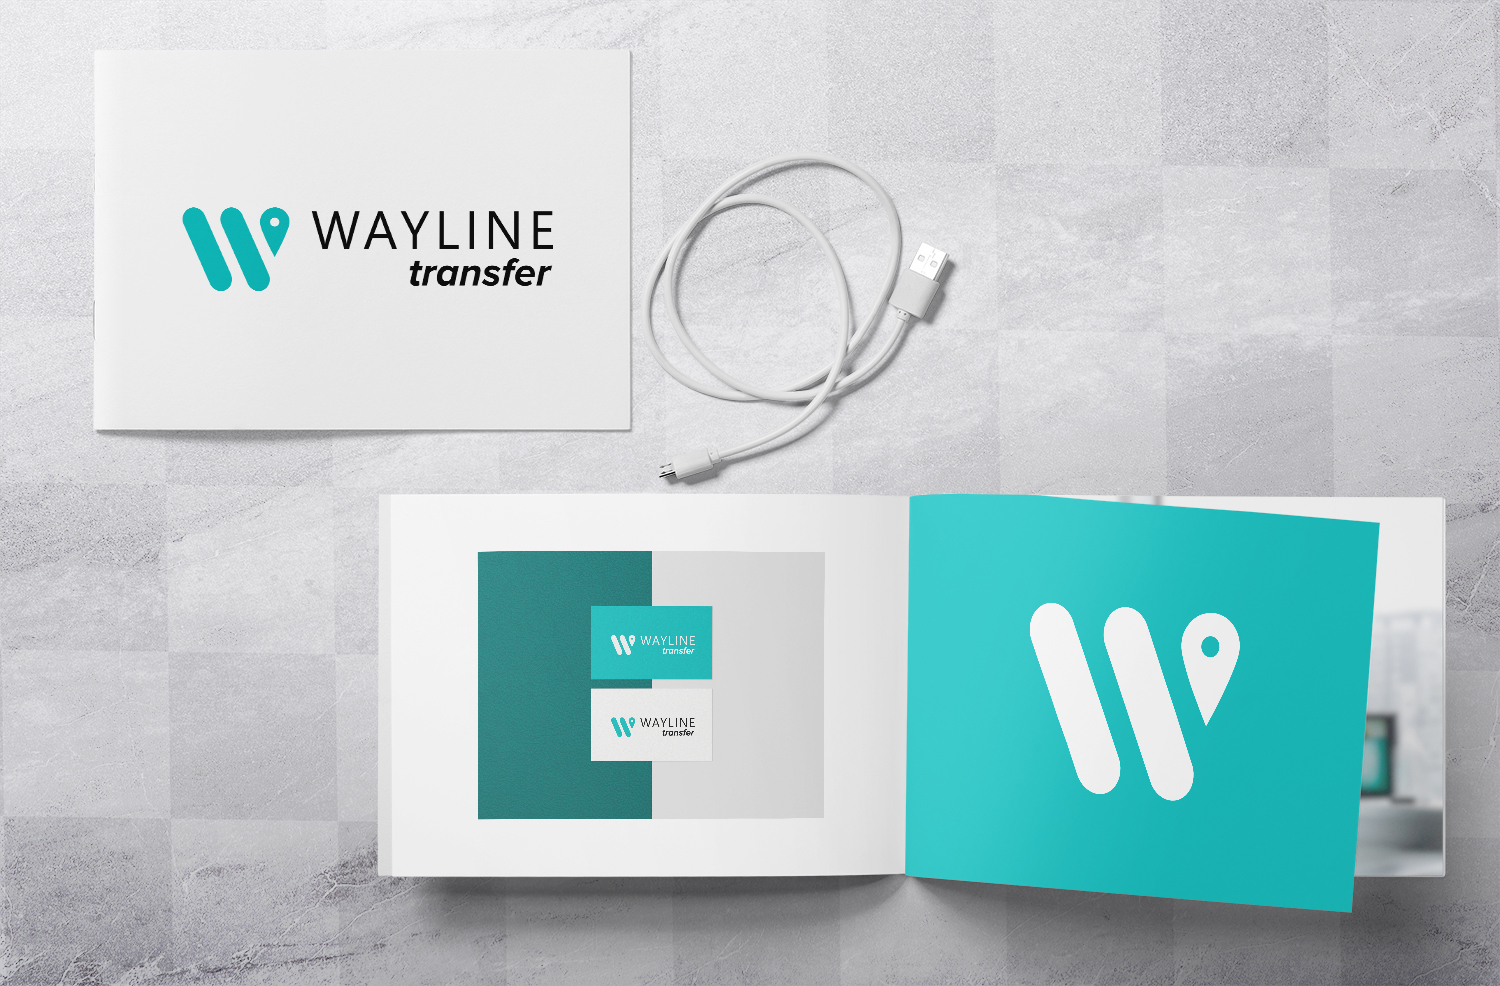 Логотип и нейминг для транспортной компании "Wayline"